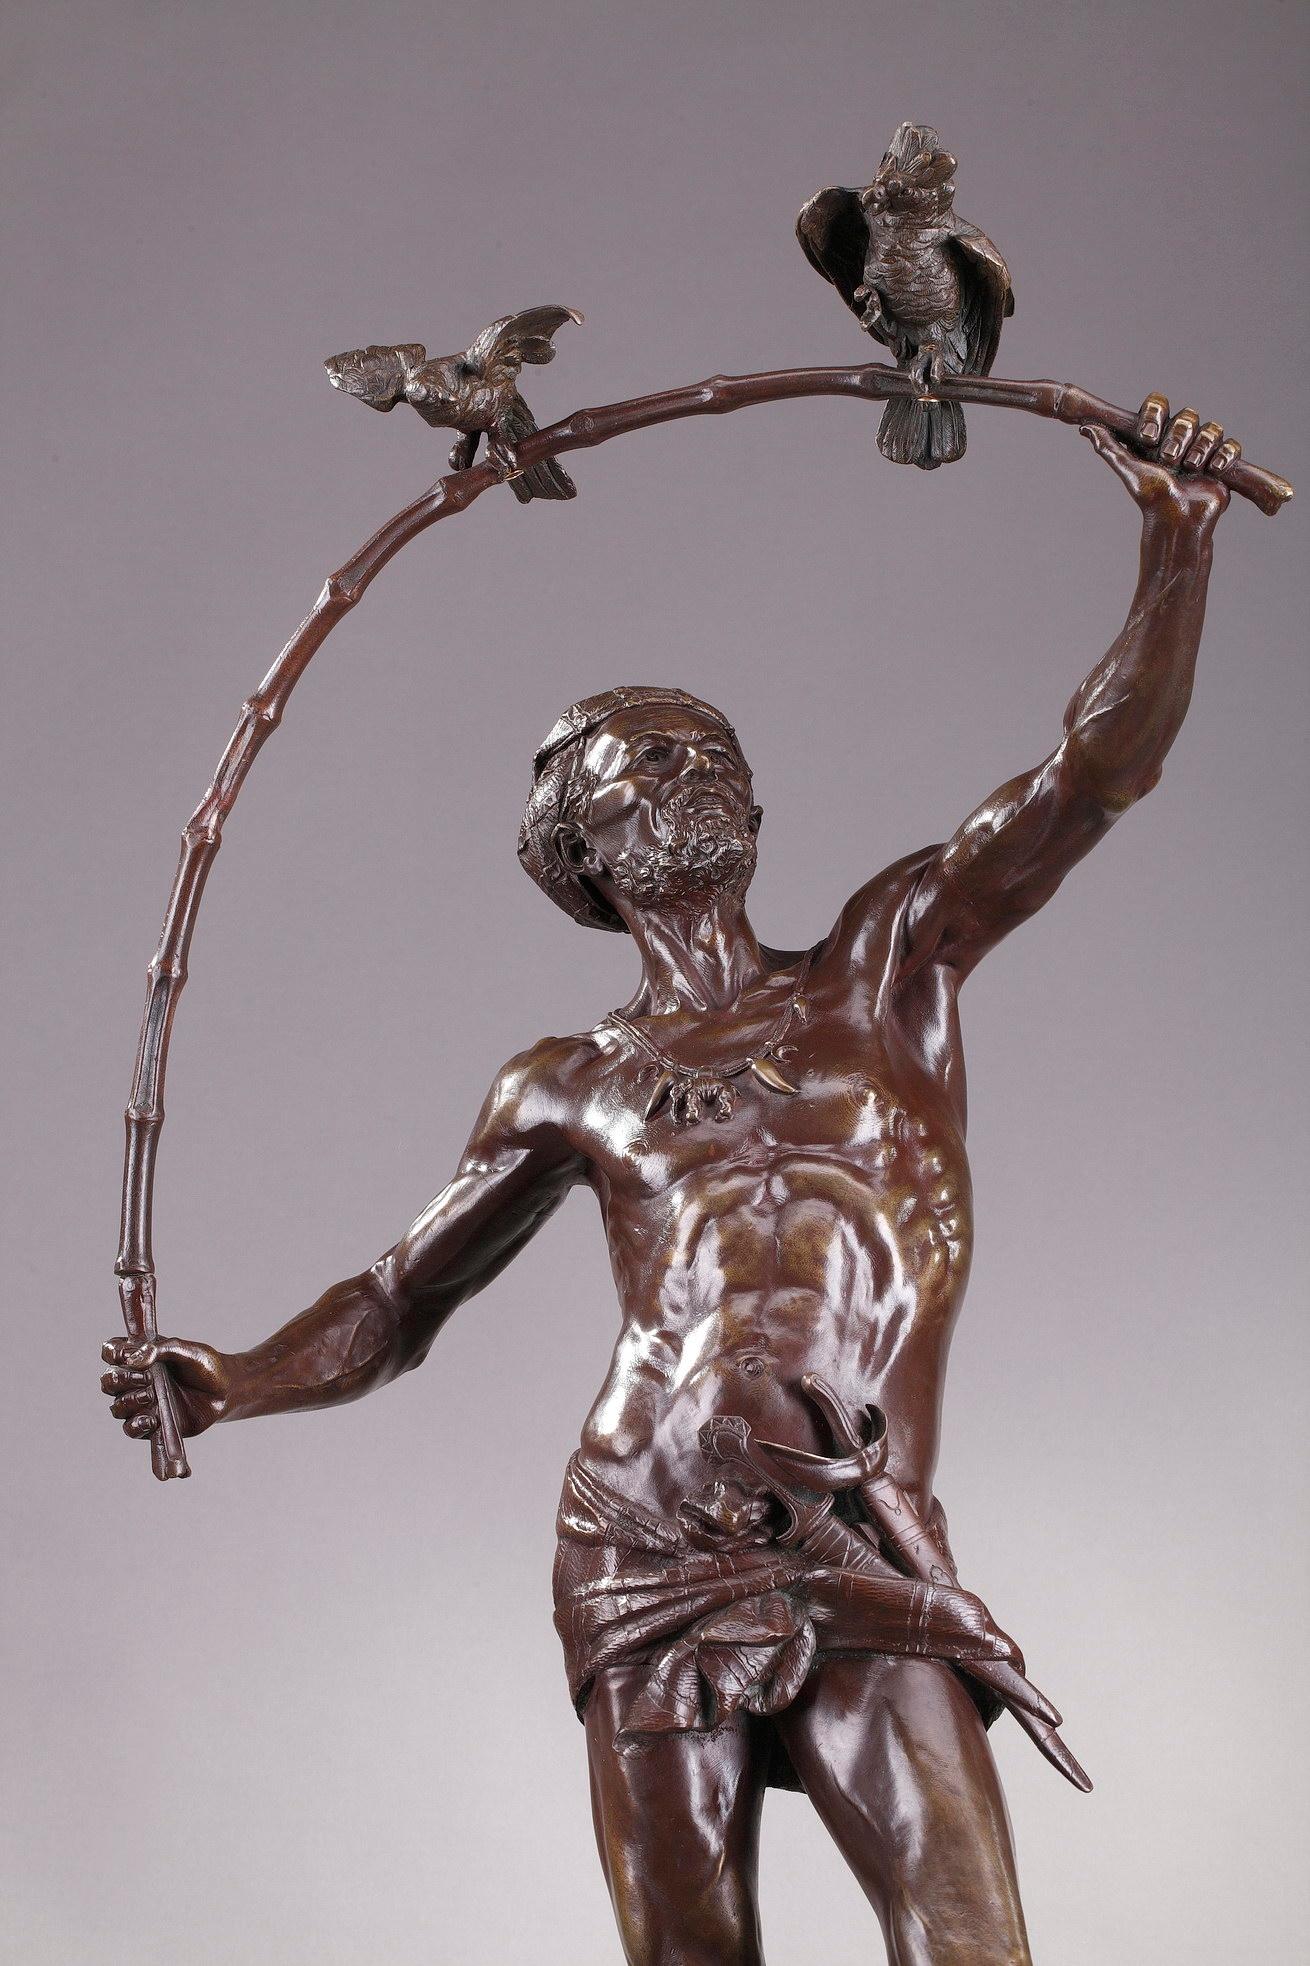 Grande statue en bronze représentant un hindou attrapeur d'oiseaux, réalisée par le sculpteur et médailliste belge Auguste de Wever. Il porte un ruban et une draperie soutenant une petite épée. Son collier est orné d'un médaillon en forme